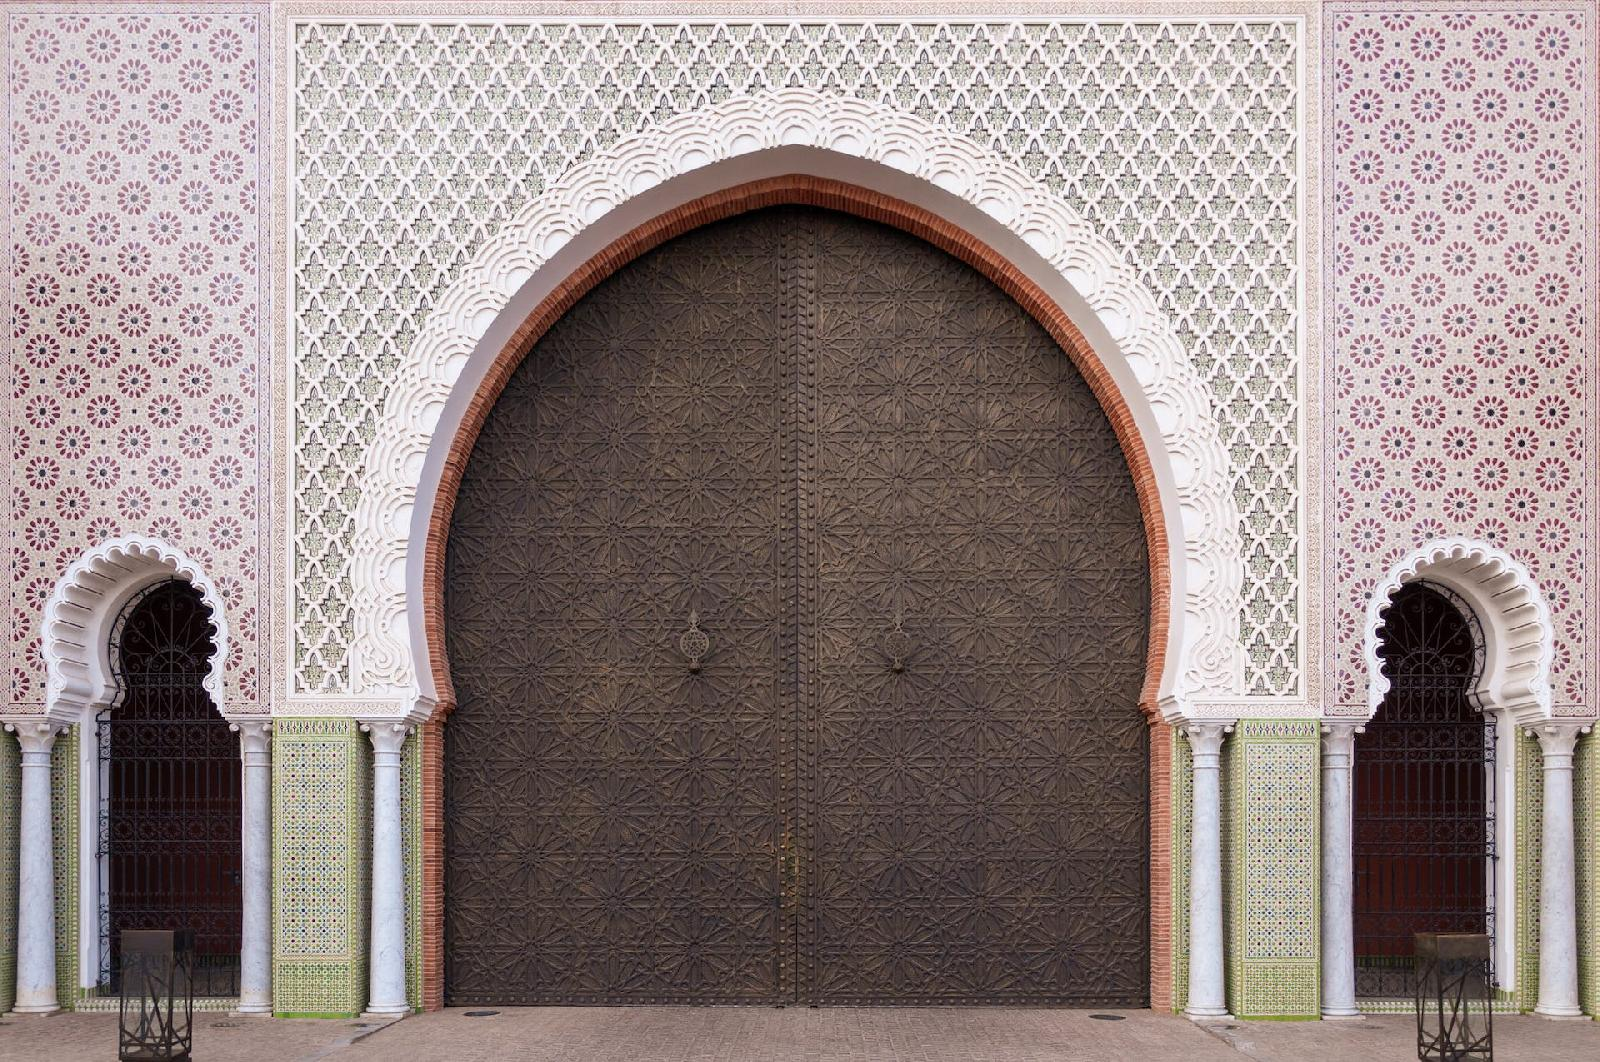 Choisir un hotel 5 etoiles a marrakech : trouvez le bon